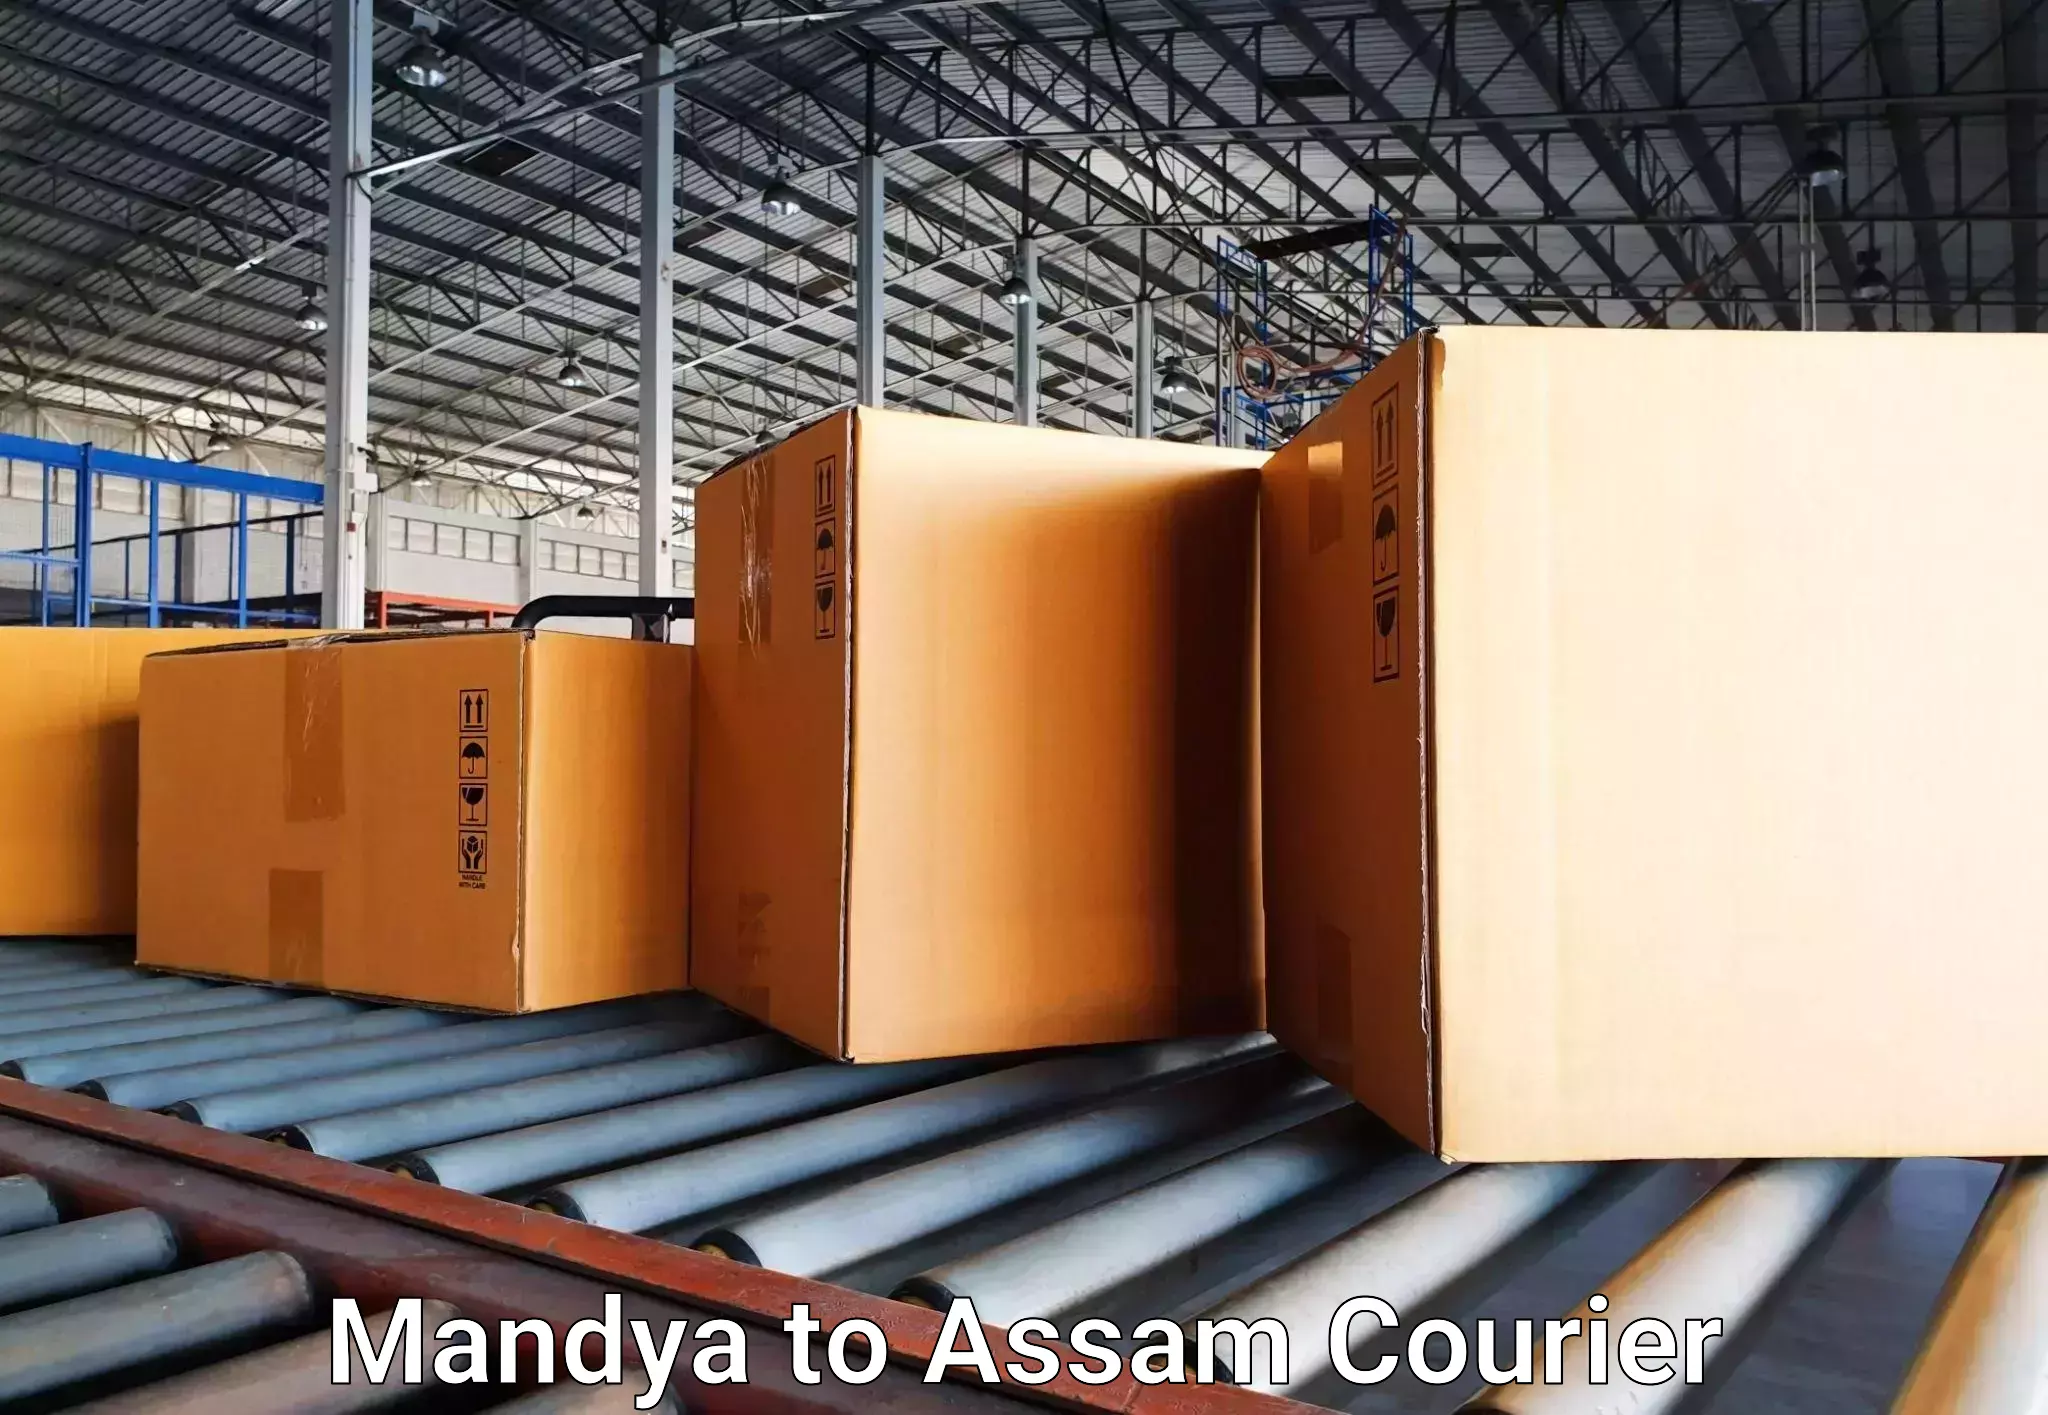 Automated luggage transport Mandya to Assam